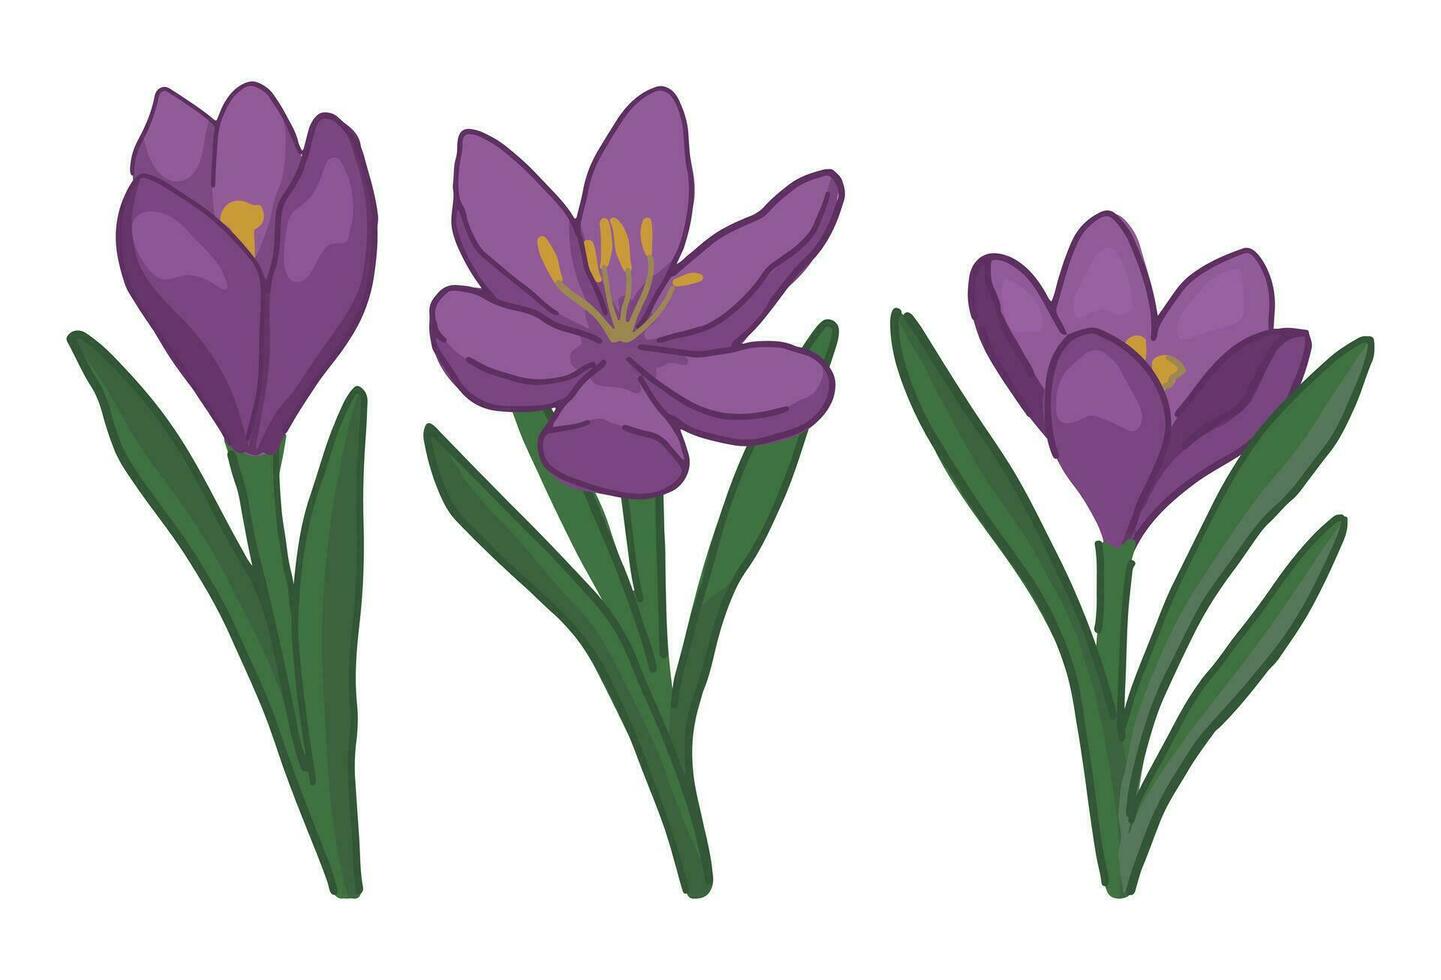 Frühling Zeit Blumen Sammlung. Clip Art einstellen von Krokus Gekritzel. Karikatur Vektor Illustration isoliert auf Weiß.